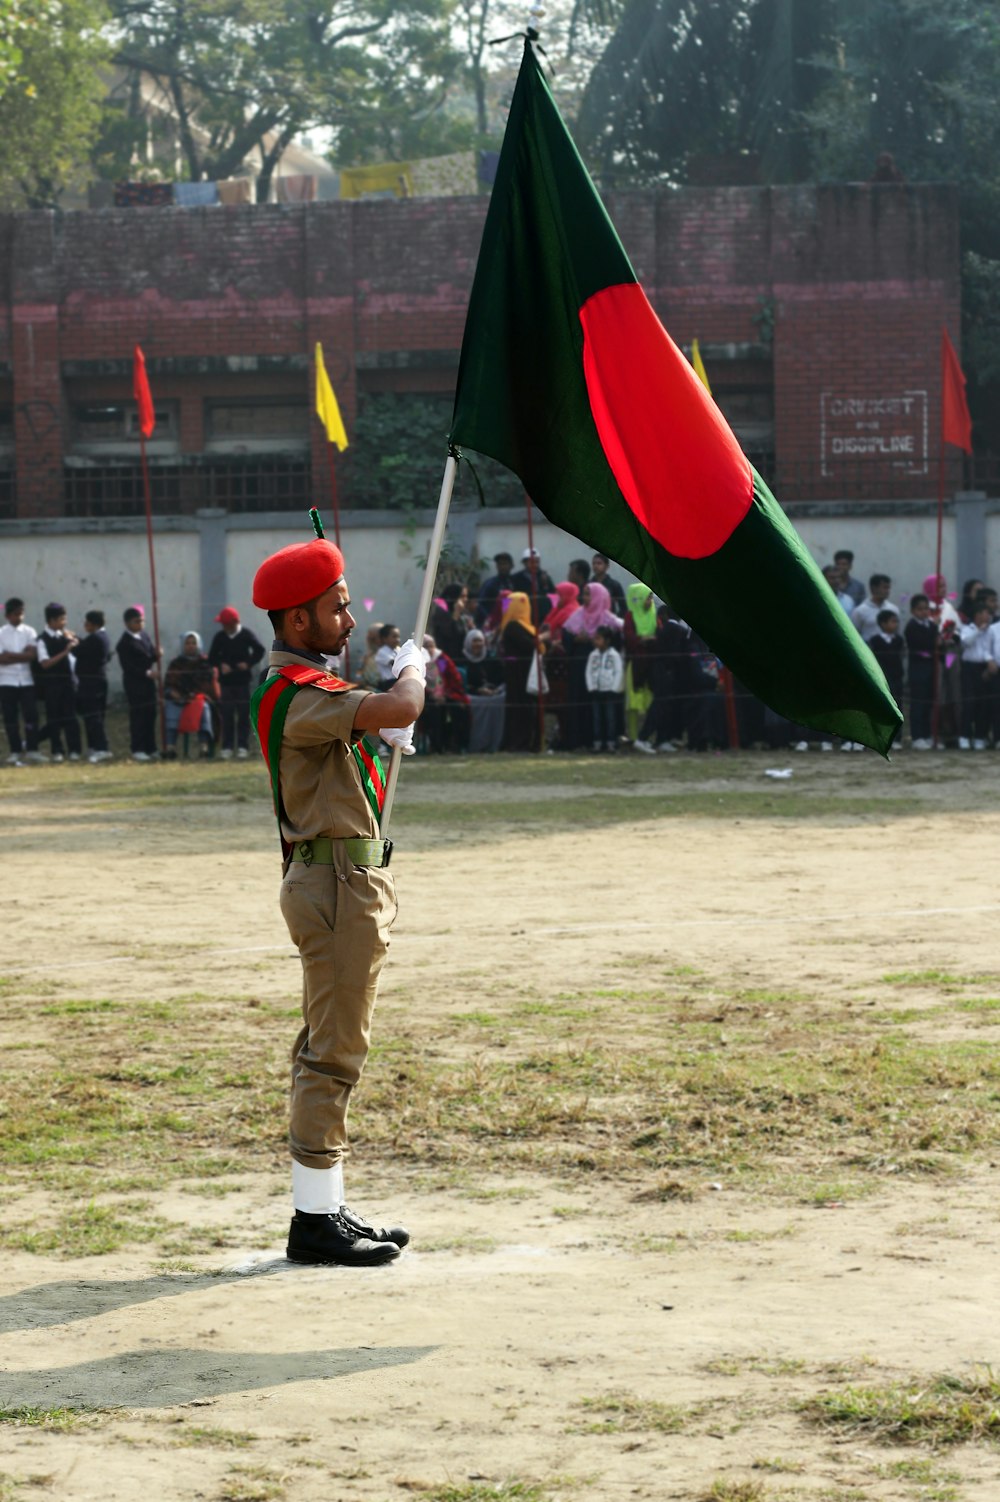 homem no uniforme verde segurando a bandeira vermelha e verde